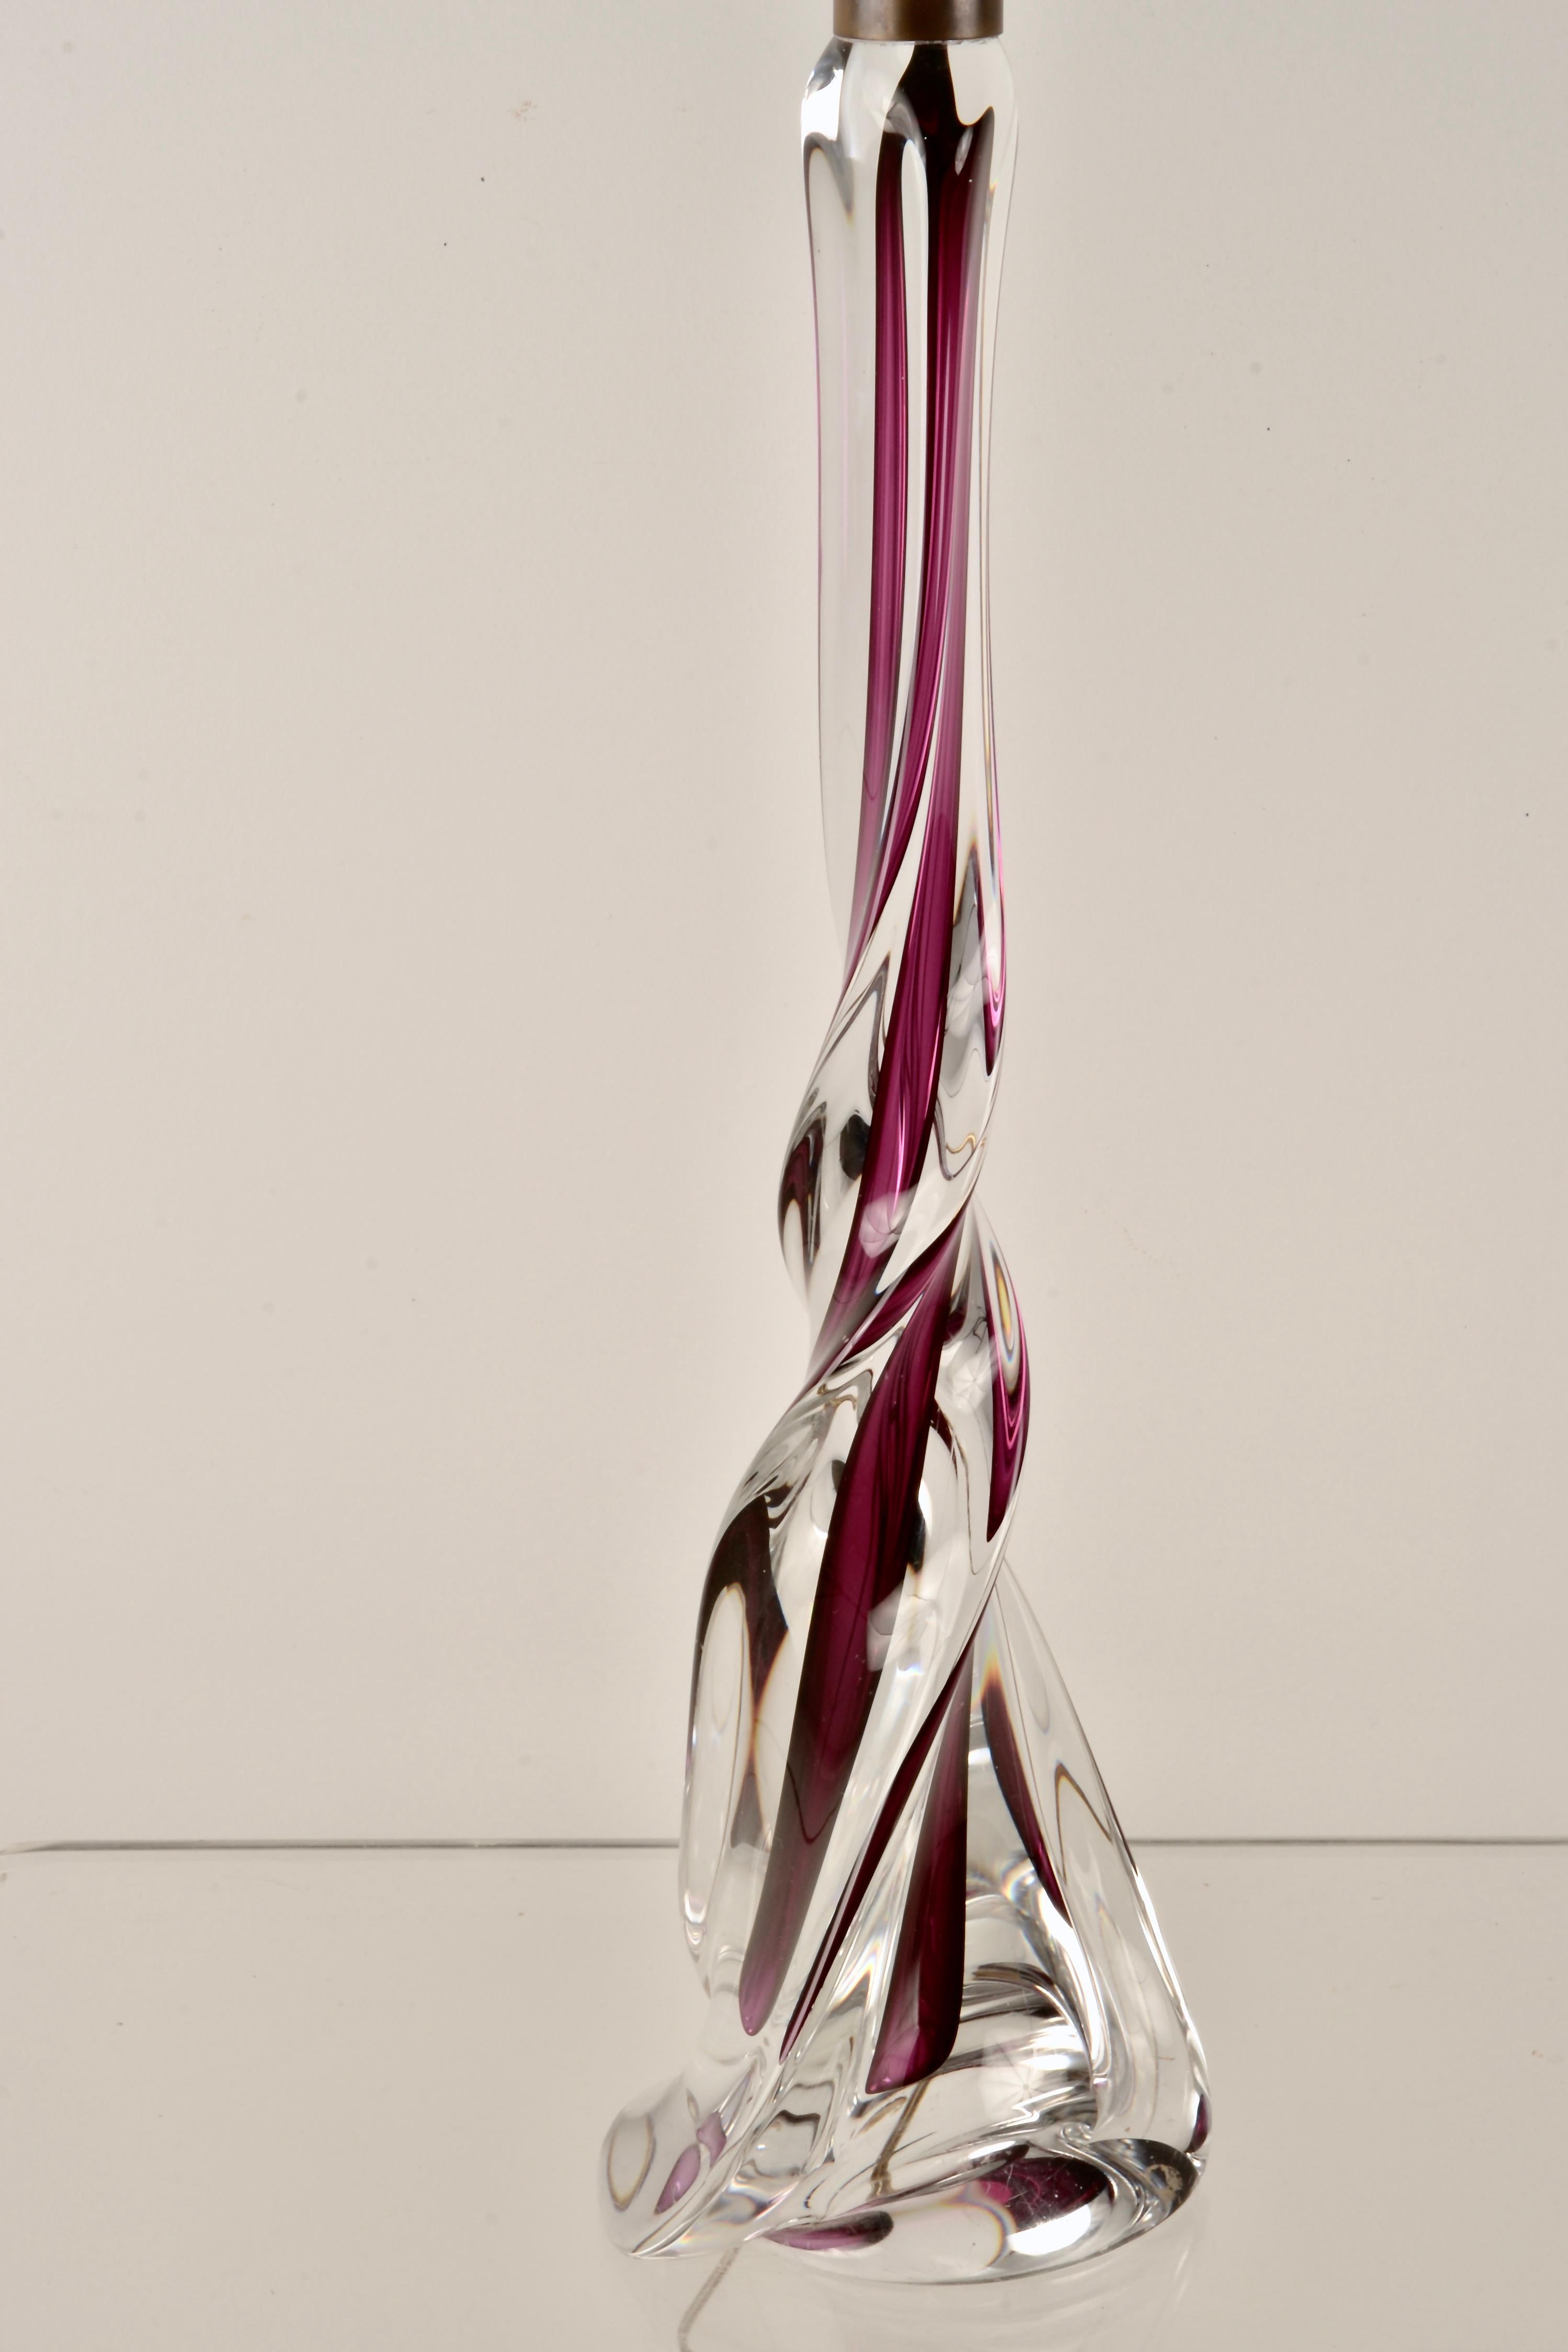 Un exemple exceptionnellement grand des élégantes lampes de table en verre de la verrerie belge Val Saint Lambert. Le verre soufflé à la main est transformé en verre torsadé en verre clair et rubis. Les raccords de lampe personnalisés sont en